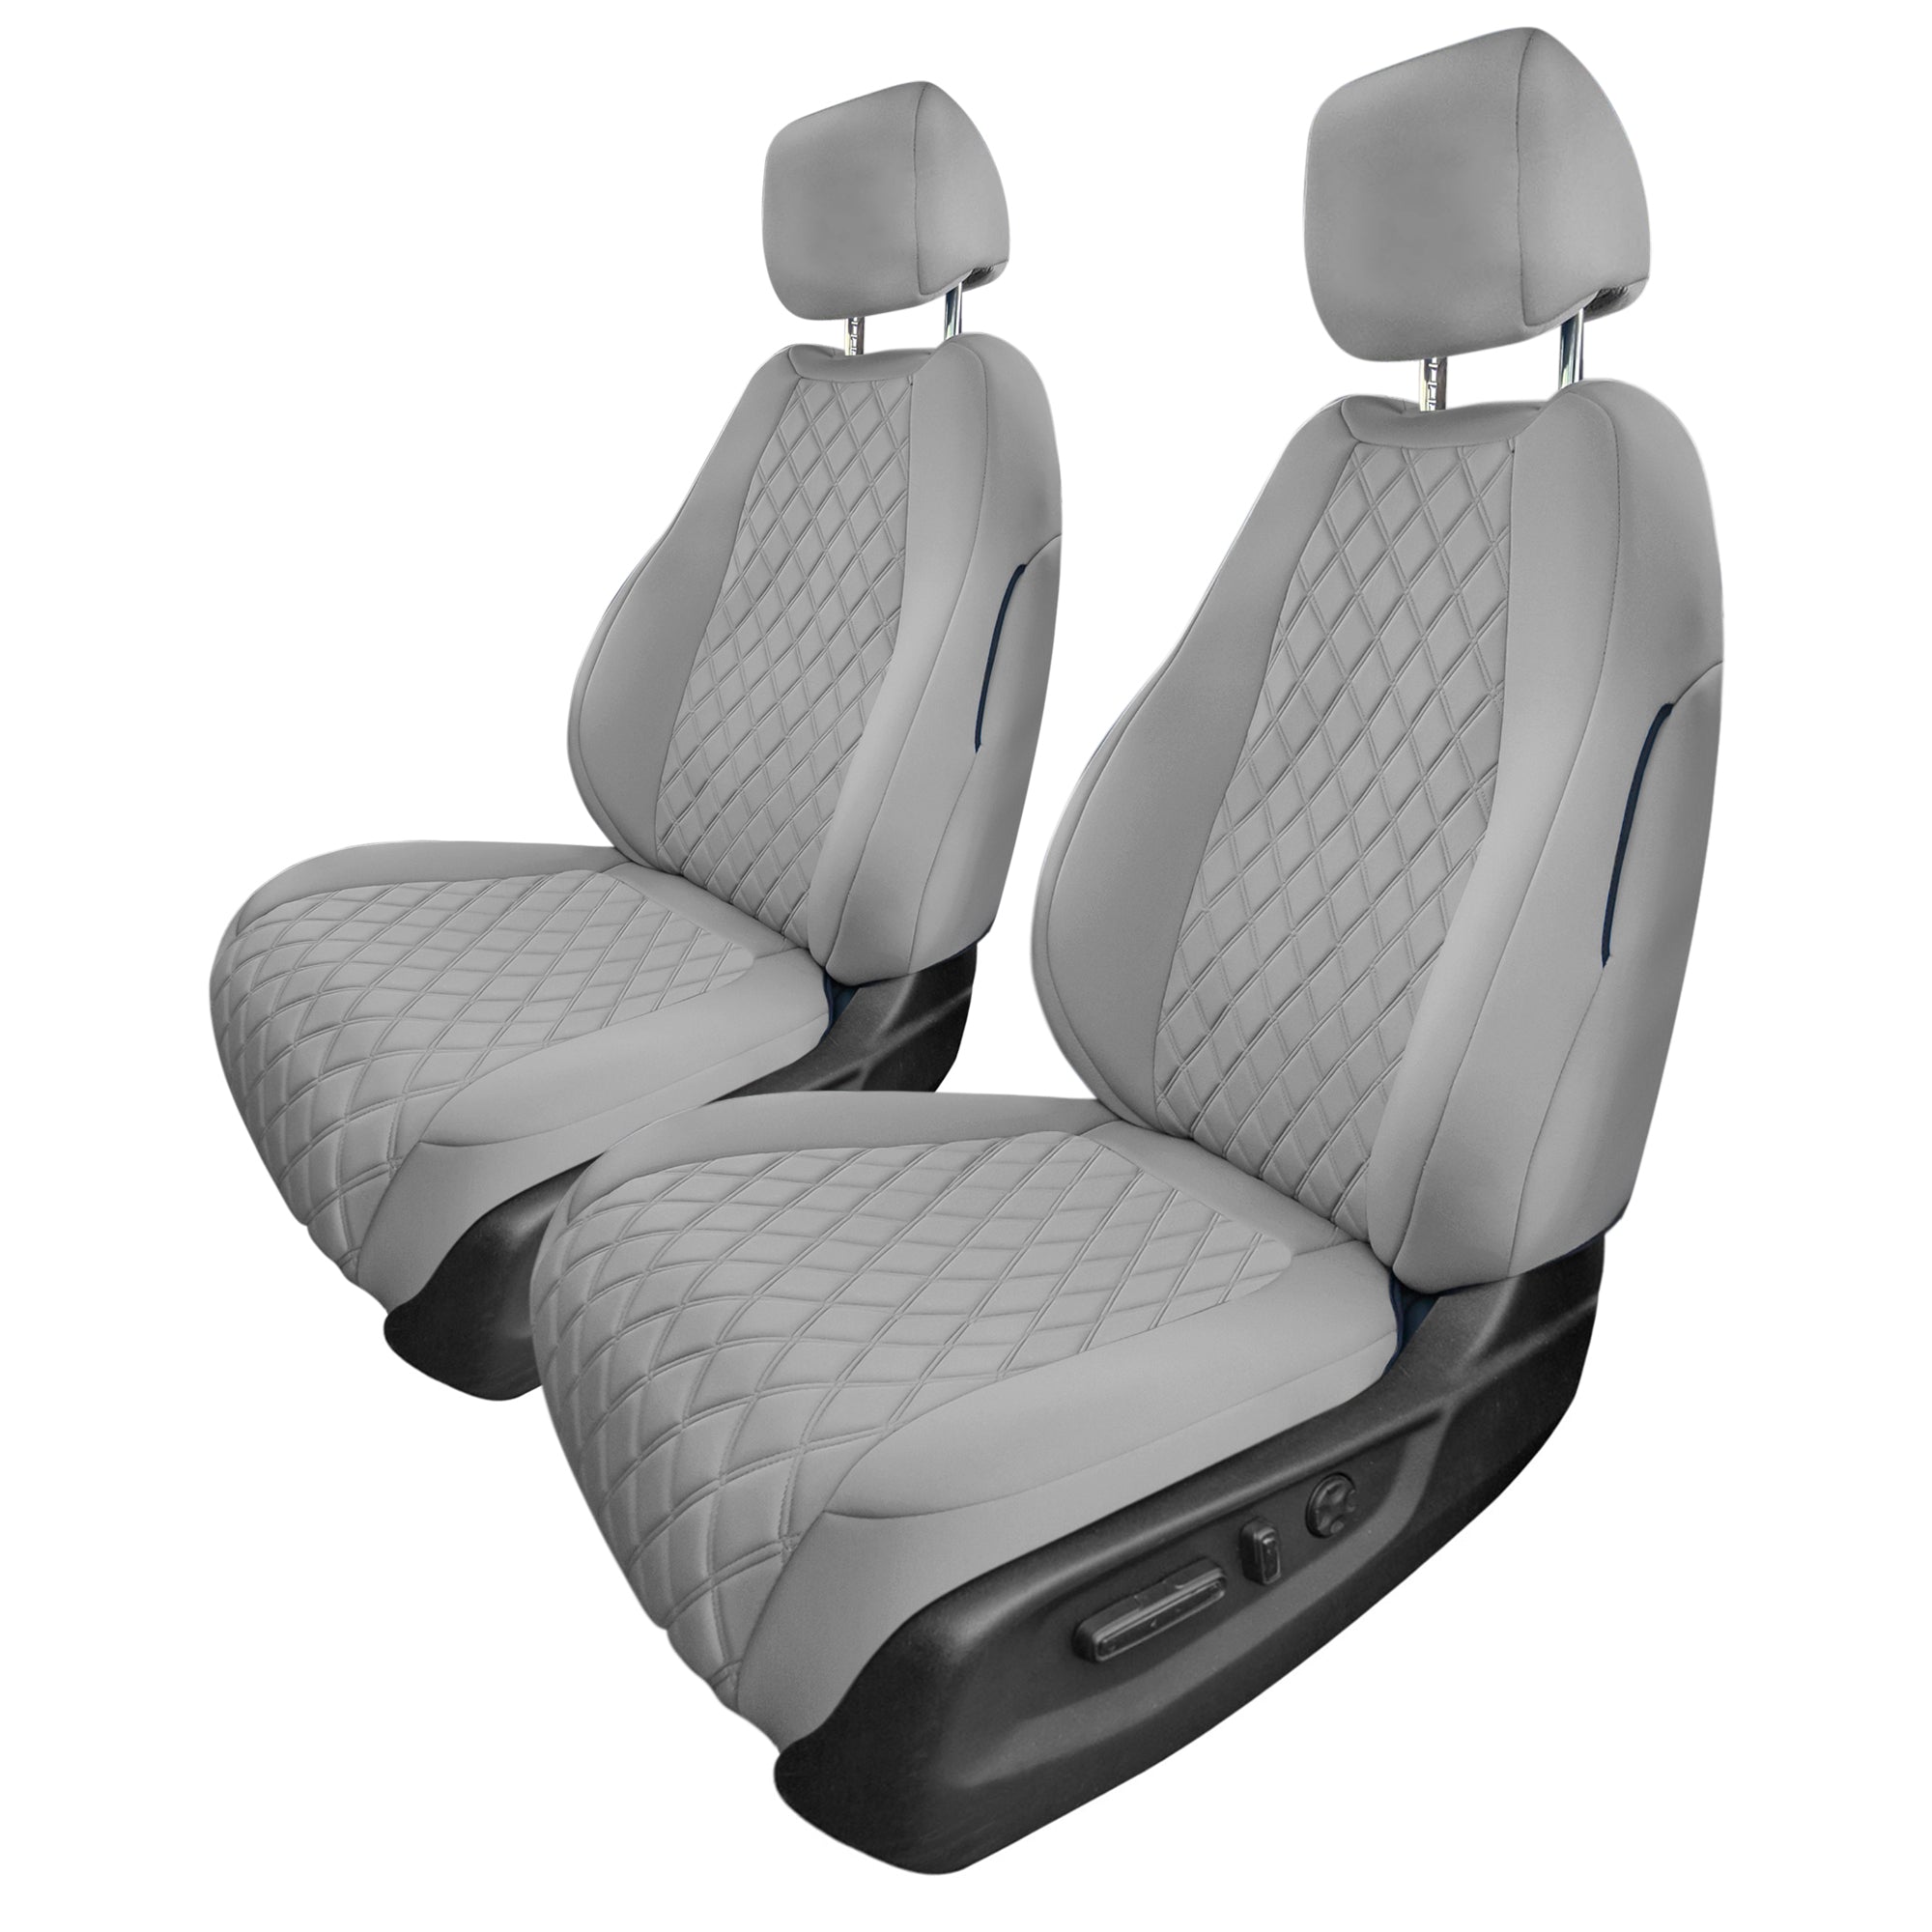 Honda CR-V 2017-2022 - Front Set Seat Covers -  Solid Gray Ultraflex Neoprene